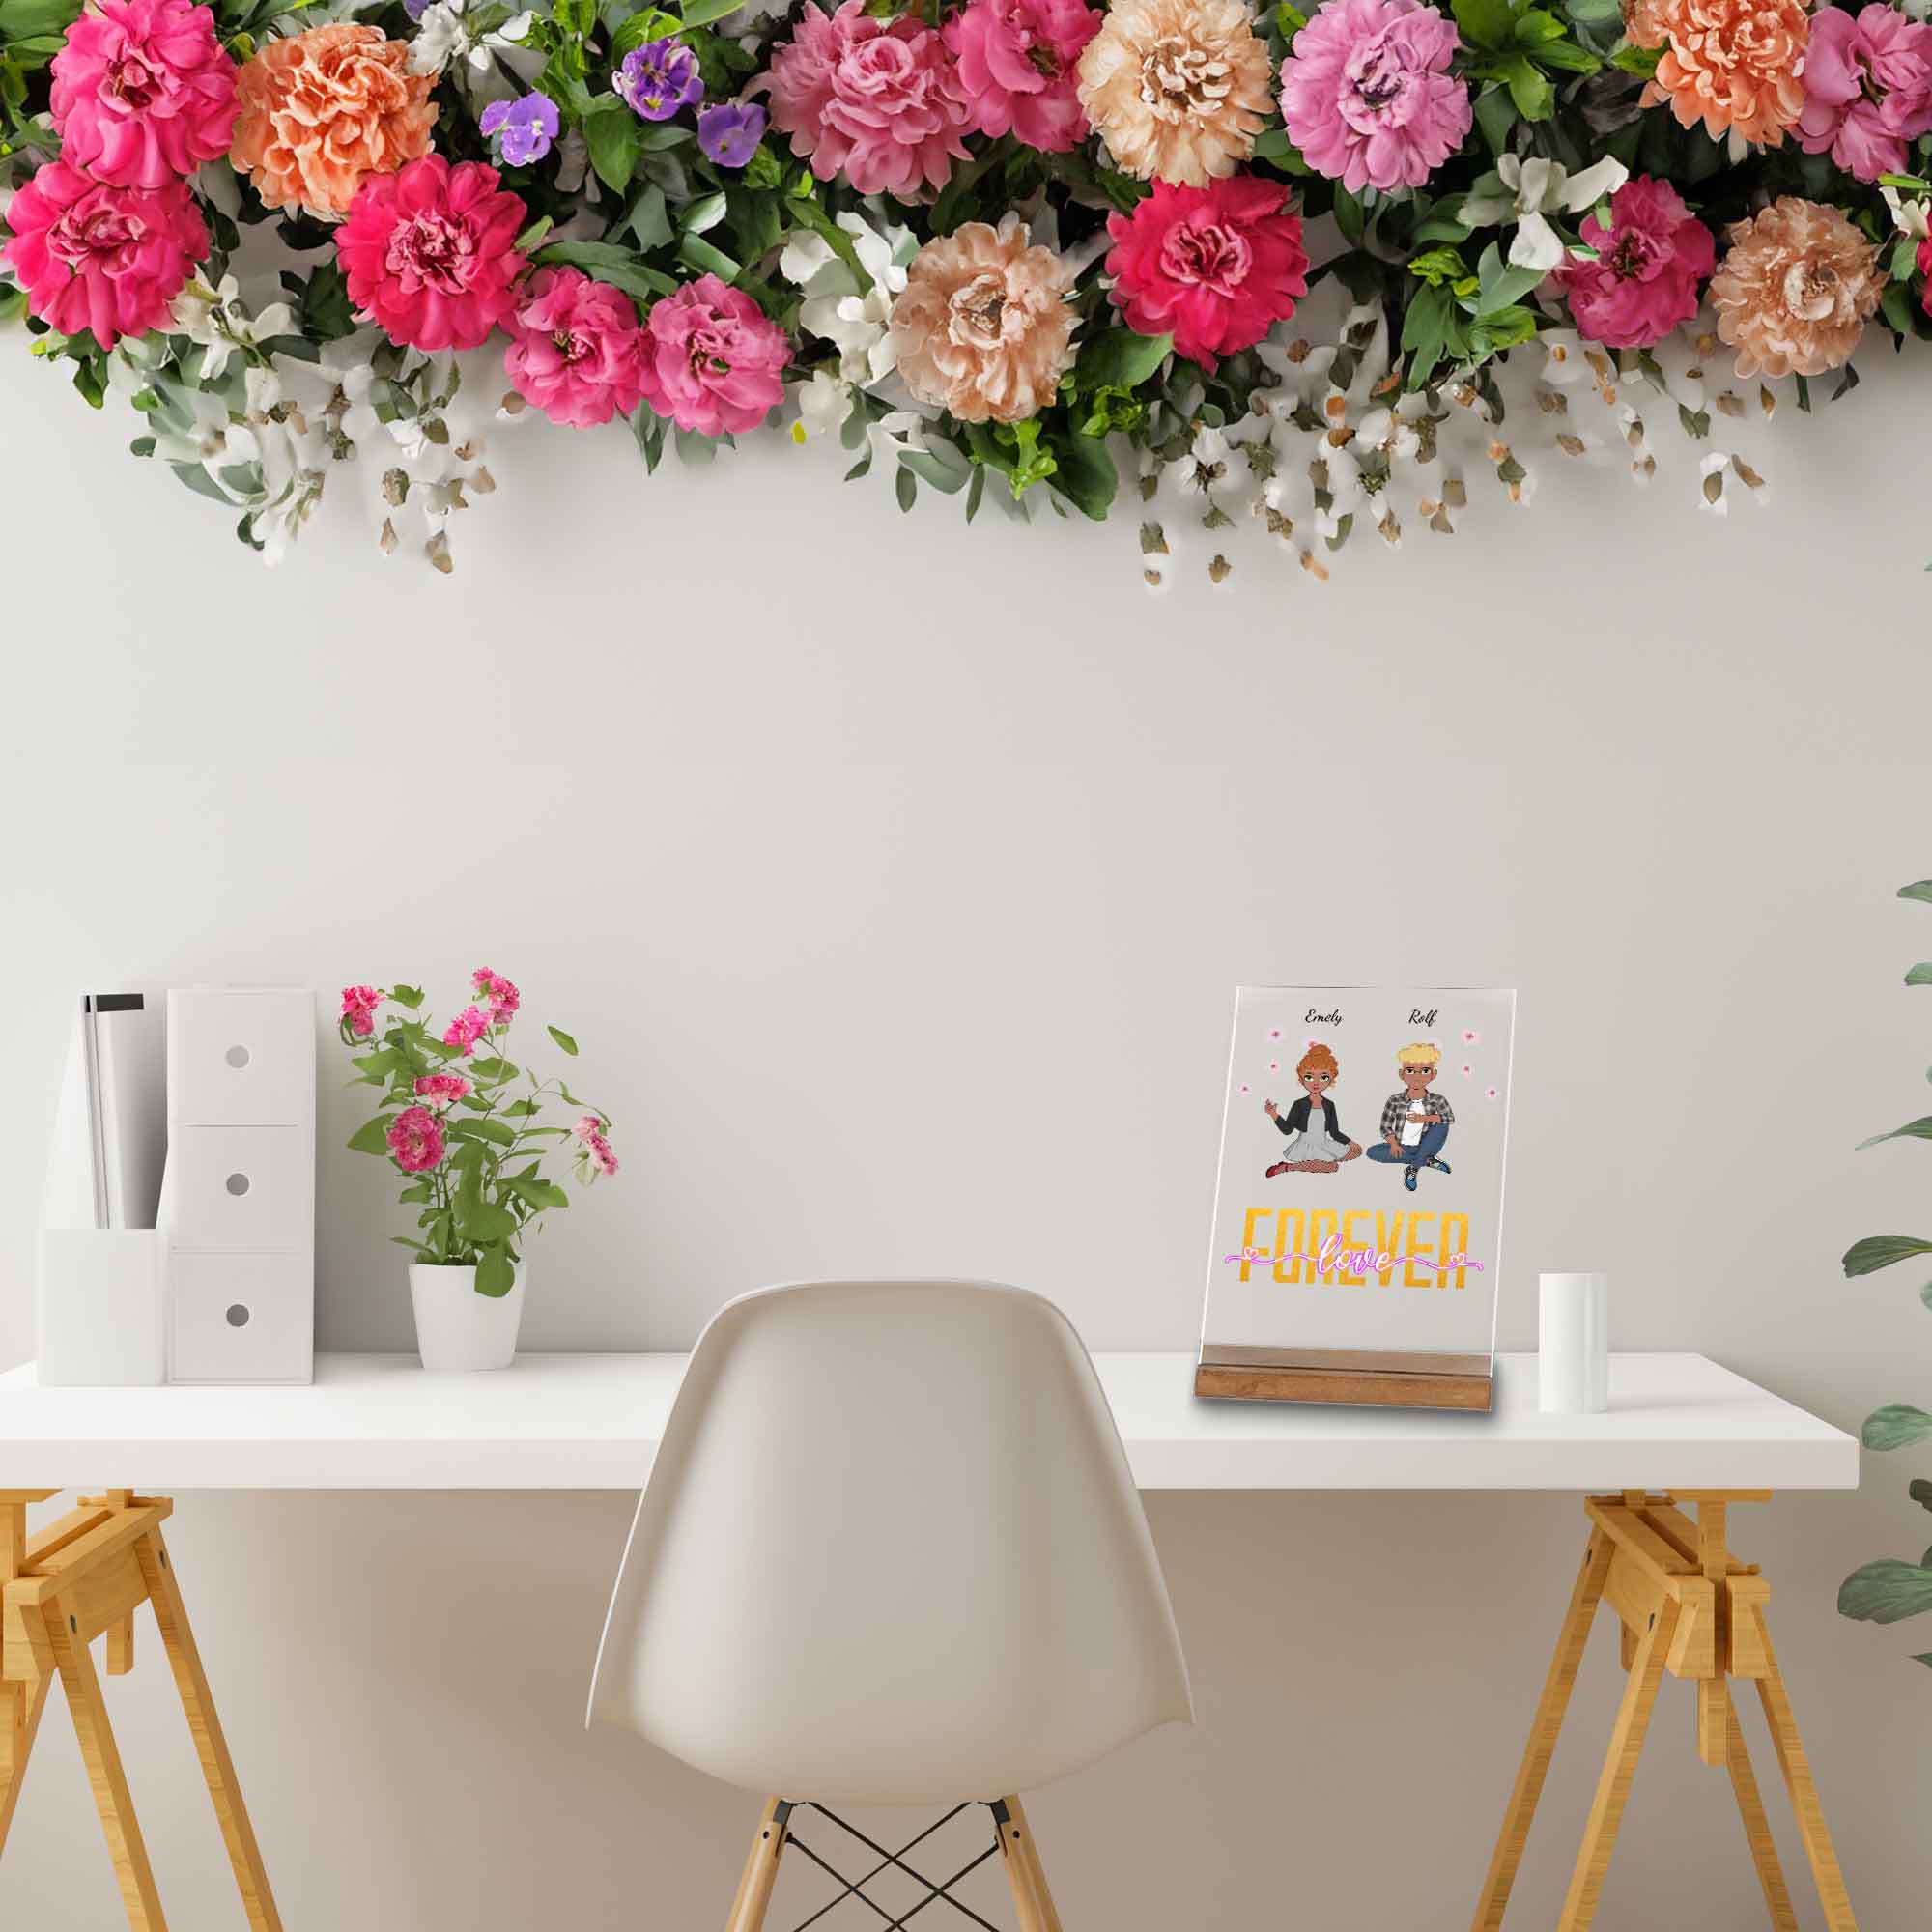 Geburtstagsgeschenk Partner-Dekoration auf dem Schreibtisch-mit Blumenkranz